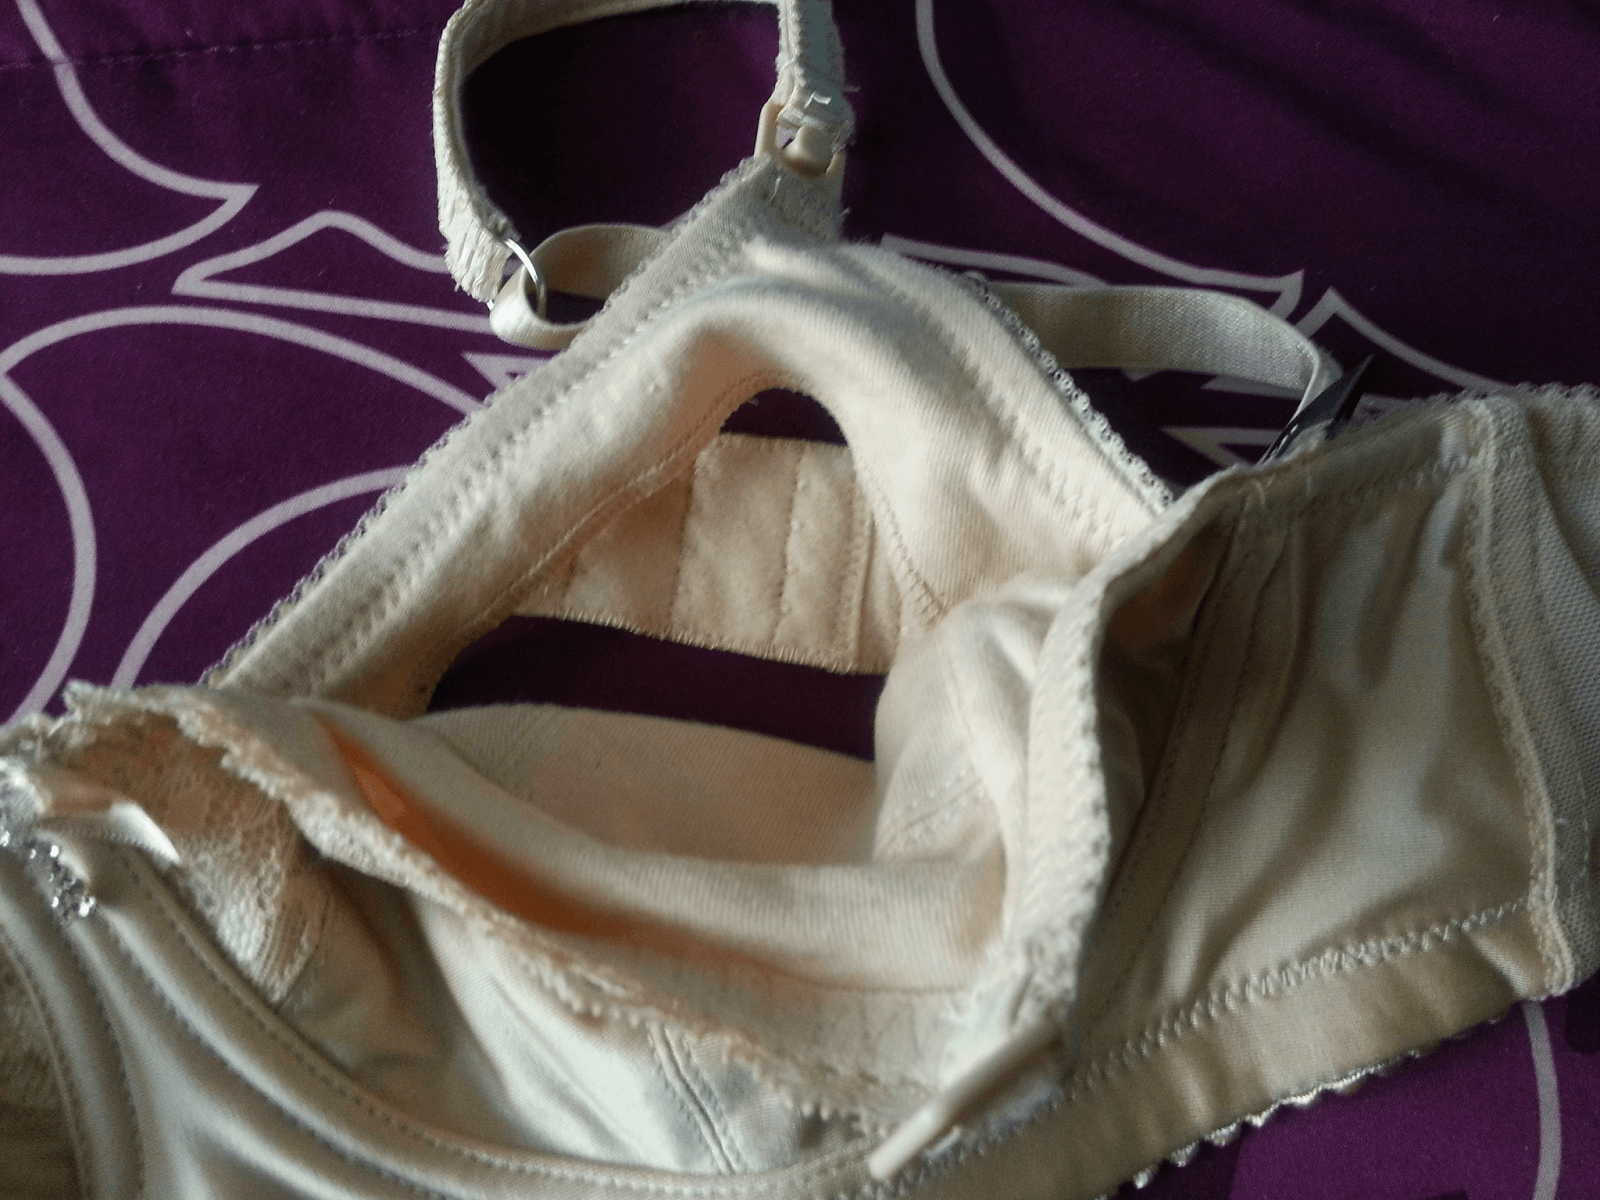 hotmilk lingerie nursing bra review